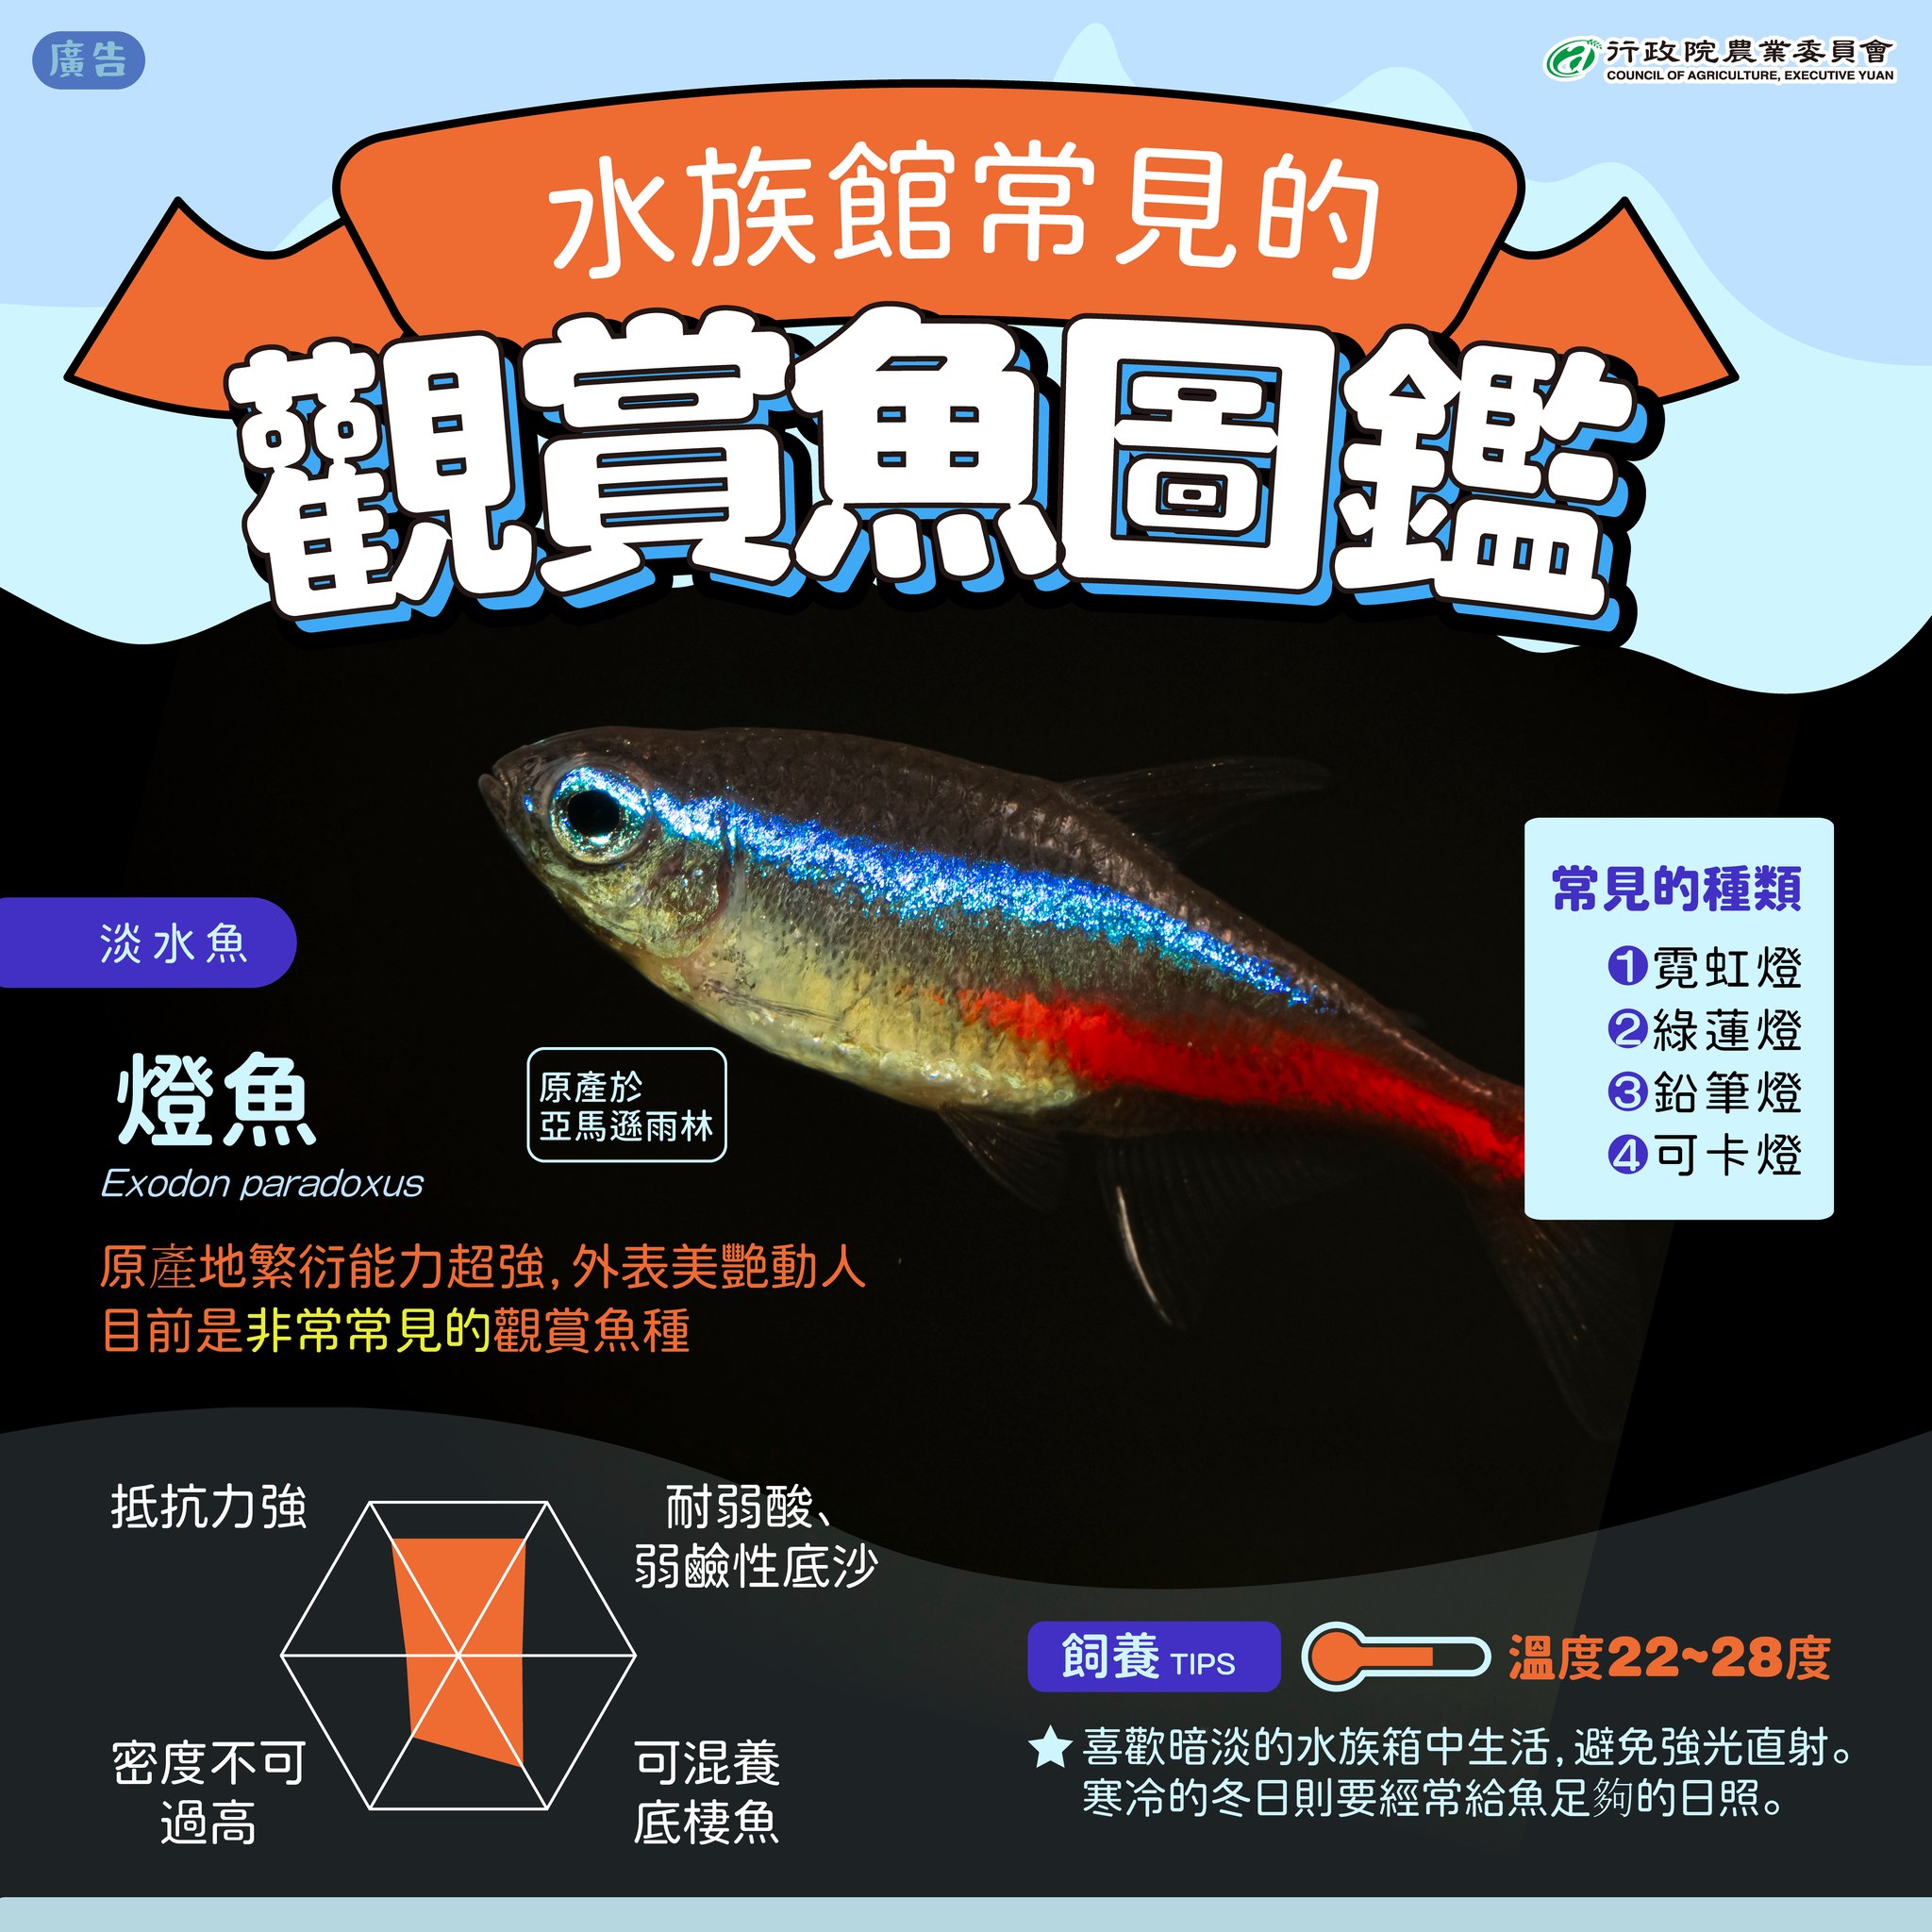 6.燈魚